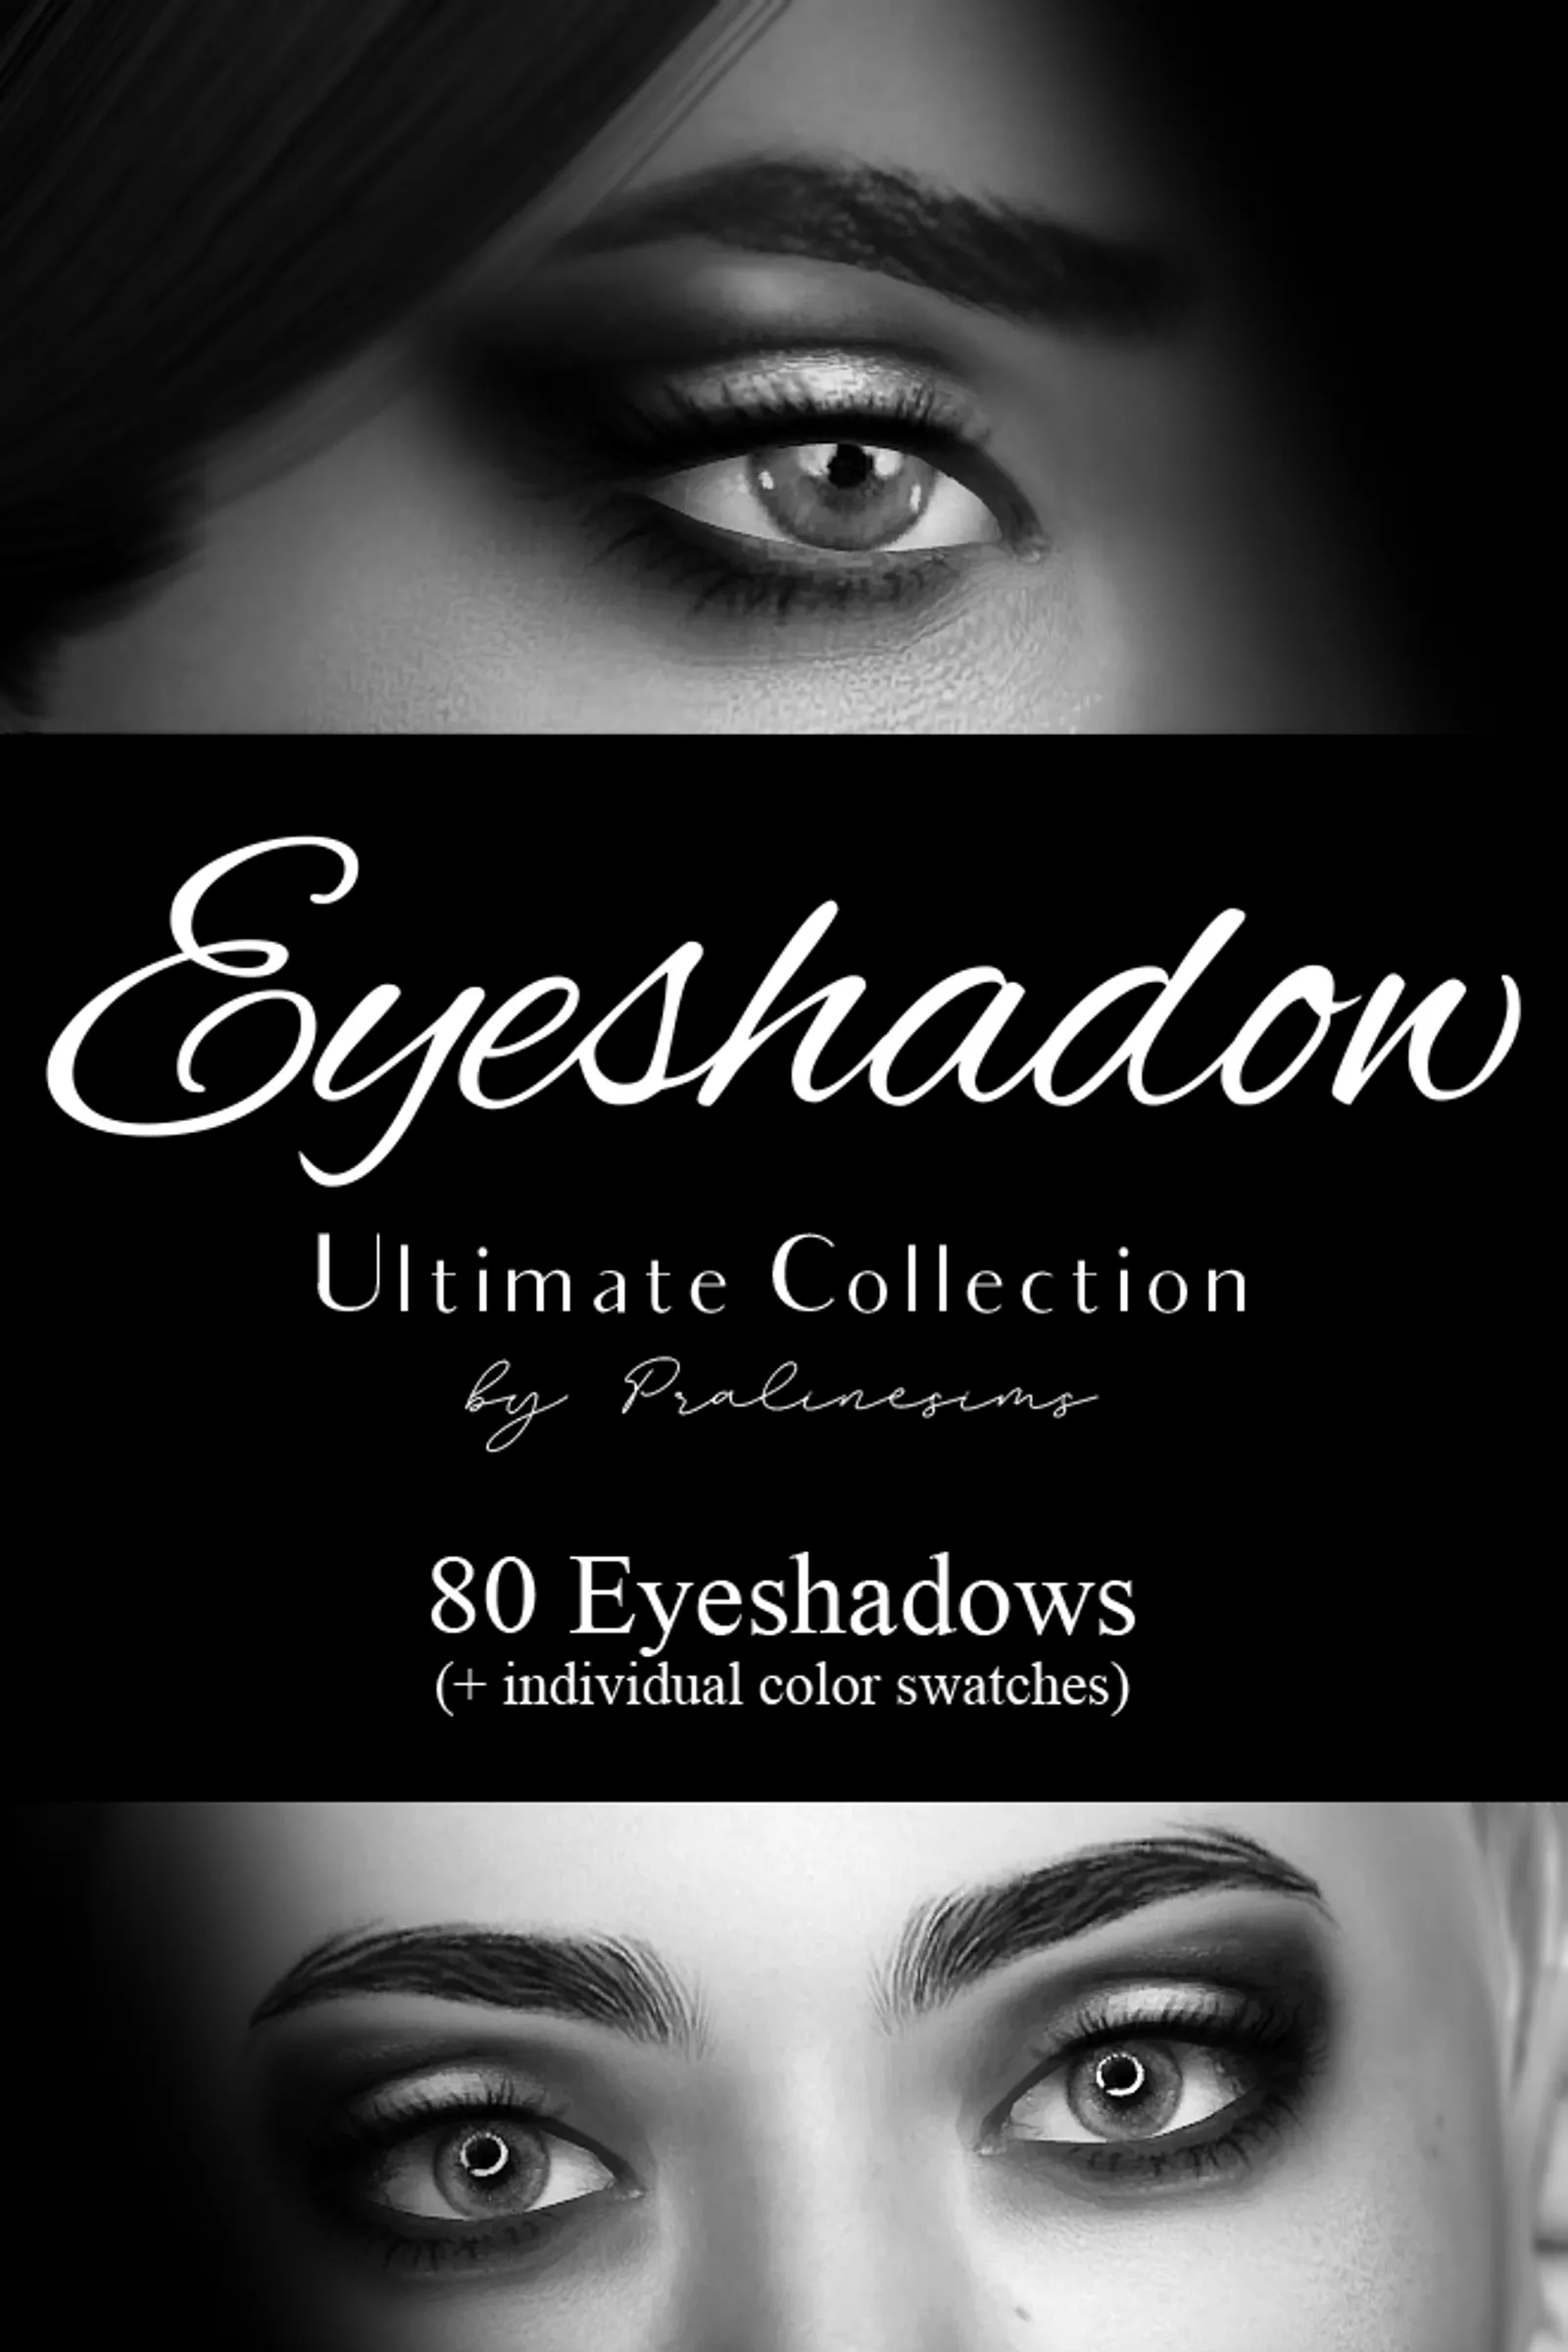 EYESHADOW Ultimate Collection